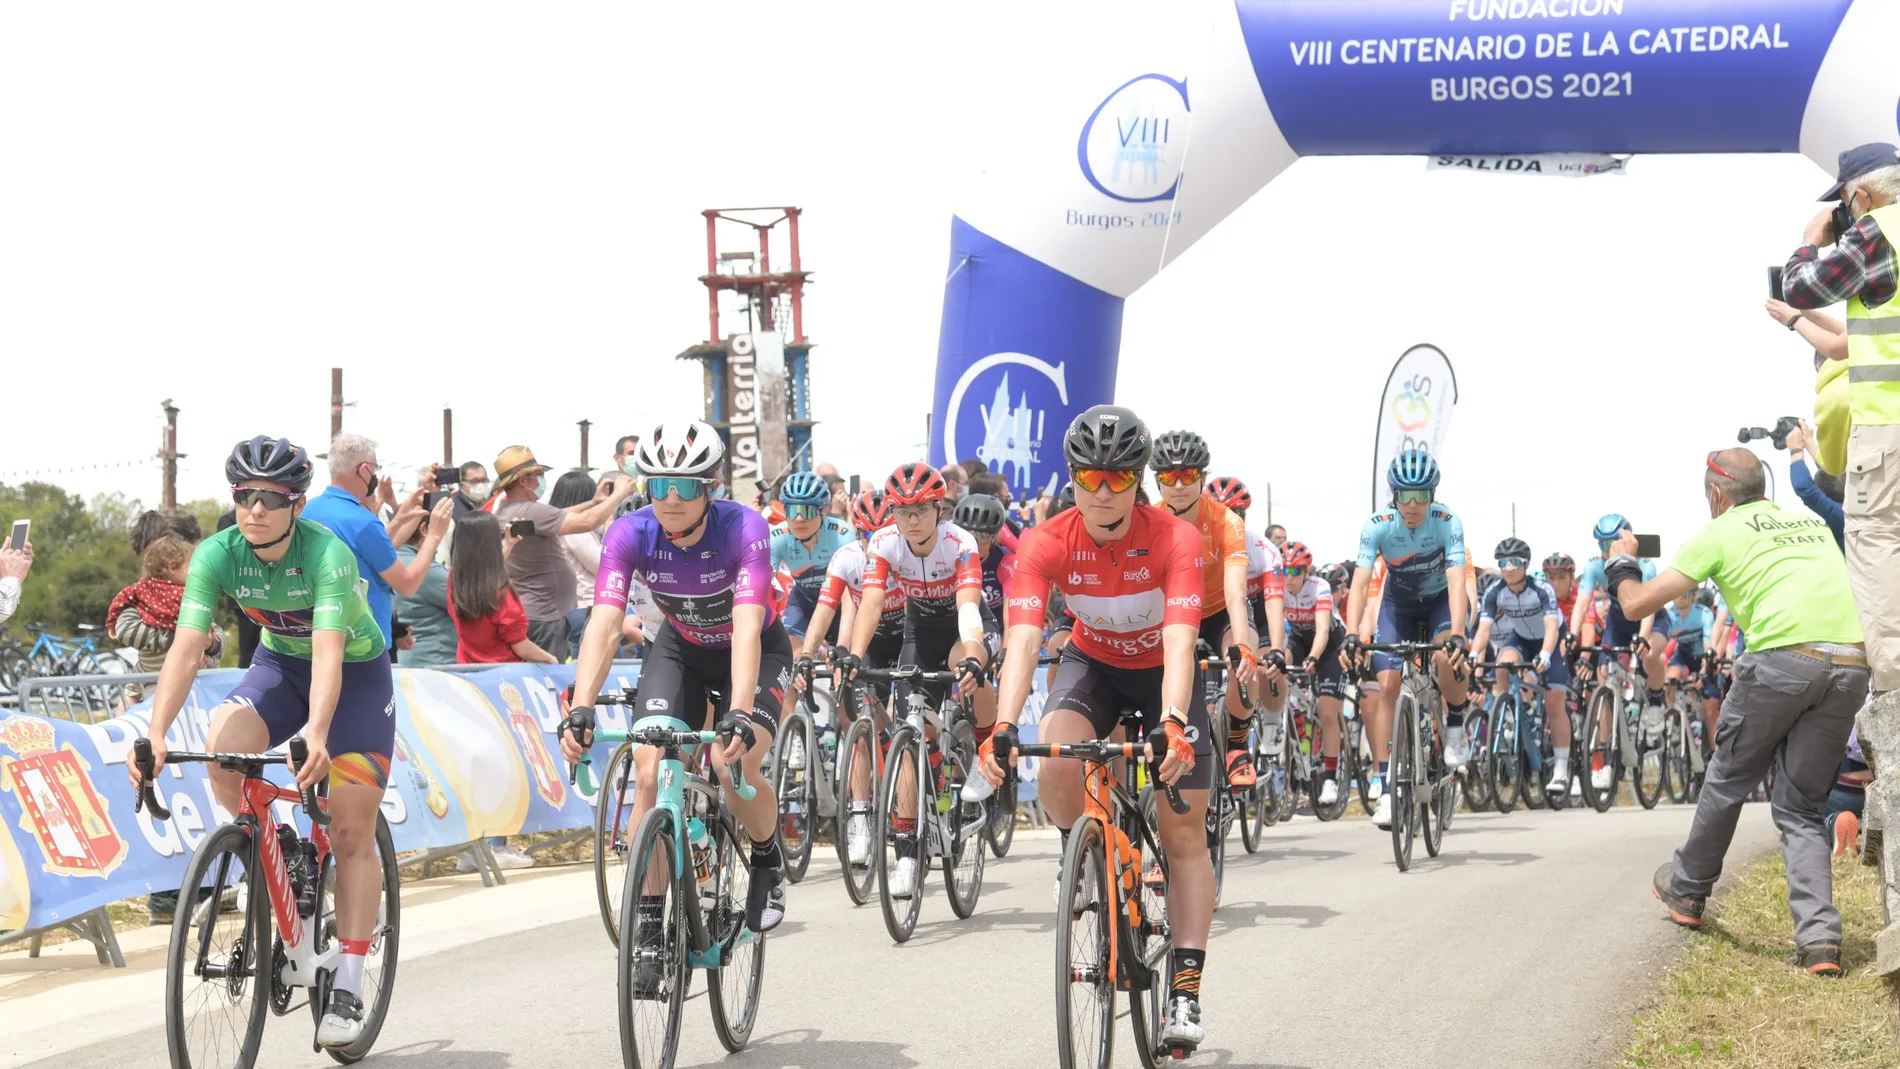 Segunda etapa de la Vuelta a Burgos Femenina que se disputa sobre cuatro etapas en línea, del 20 al 23 de mayo bajo la organización de la Diputación de Burgos. Esta segunda jornada tiene salida desde Pedrosa de Valdeporres, con llegada a Villarcayo.